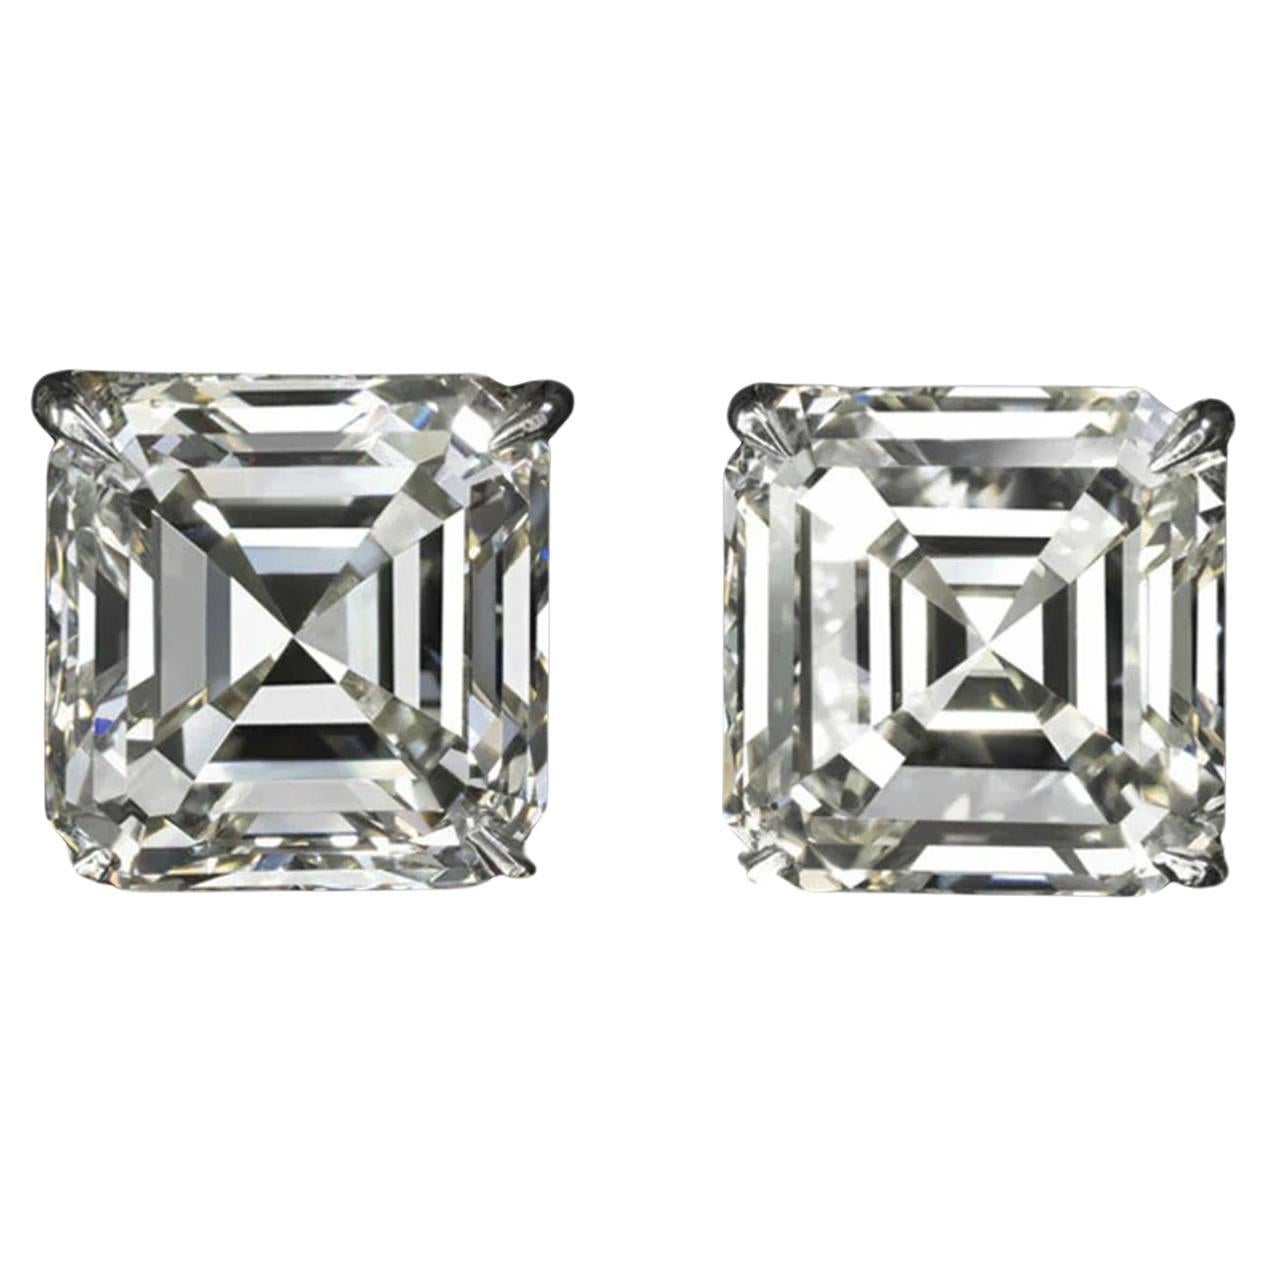 Exceptional GIA Certified 8.04 Carat Asscher Cut Diamond Studs